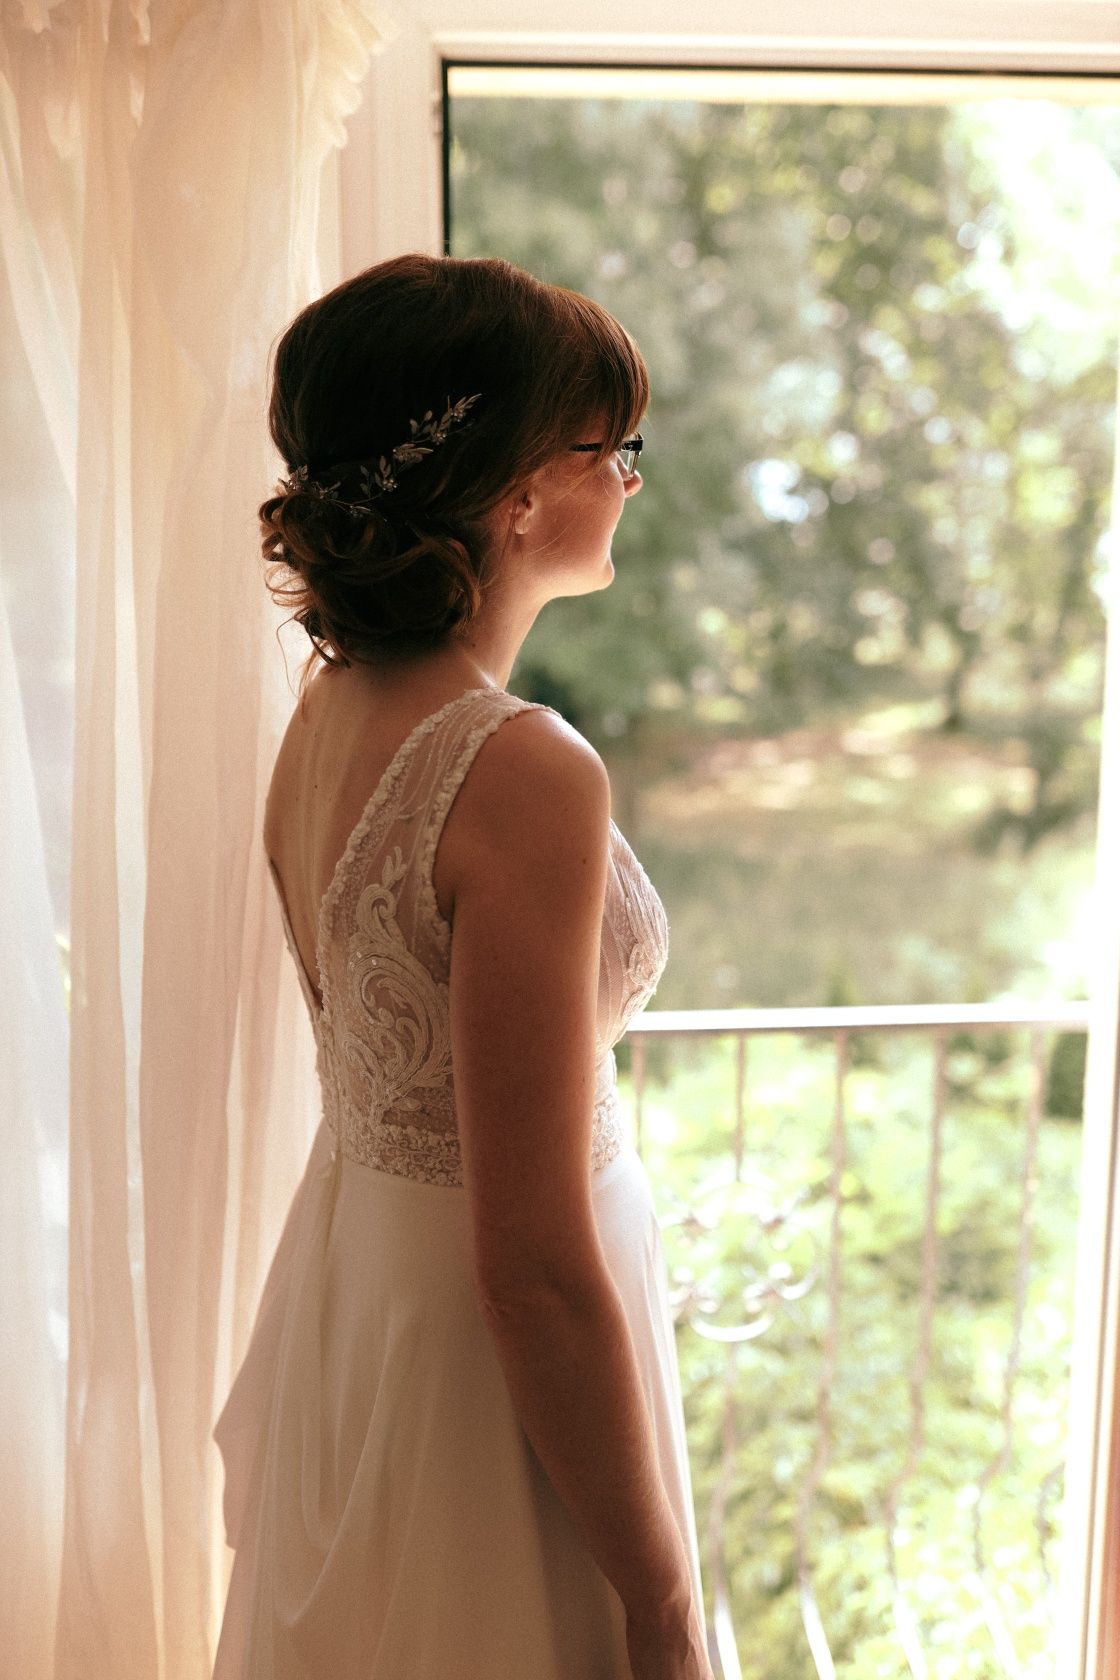 Romantyczna suknia ślubna